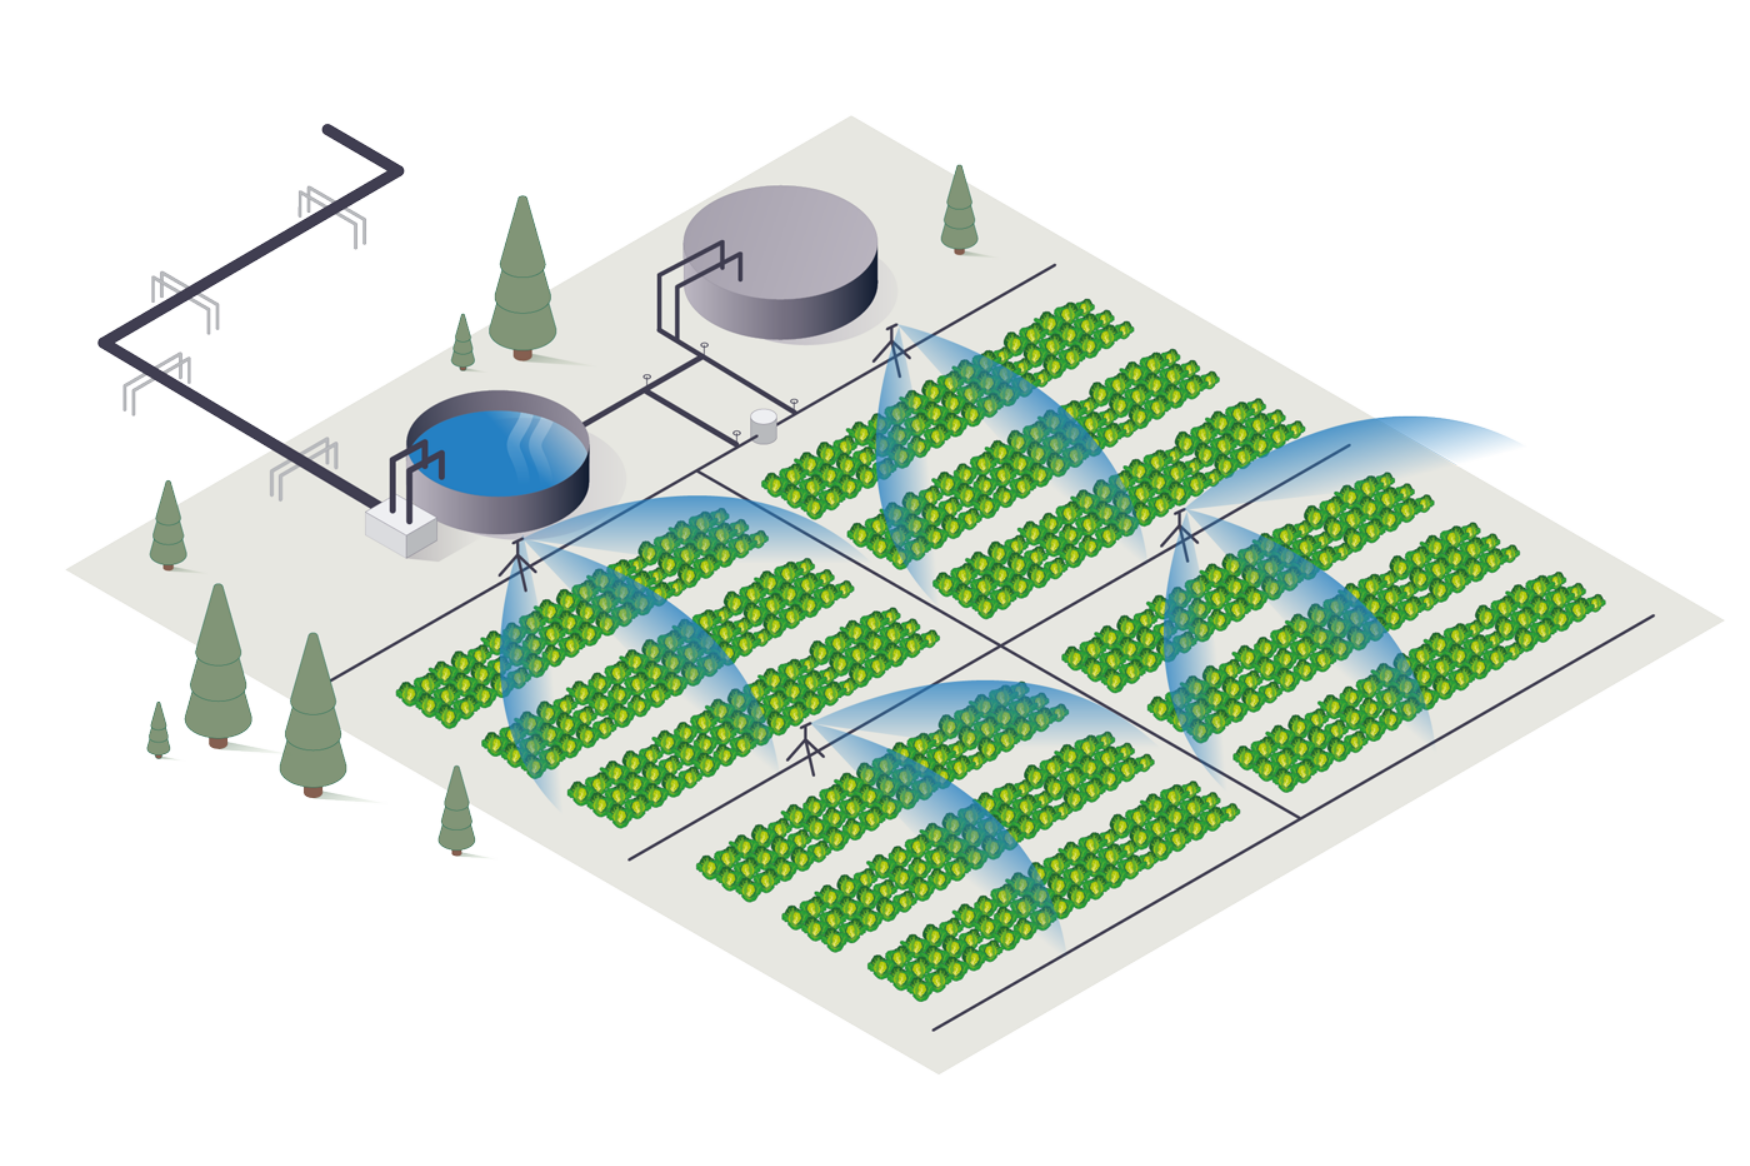 Réservoirs d'aquaculture - recyclage - L'eau douce de la phase d'alevinage / smolt est transférée vers une grande serre (aquaponique) avec une capacité de production de 4000 tonnes de salade par an